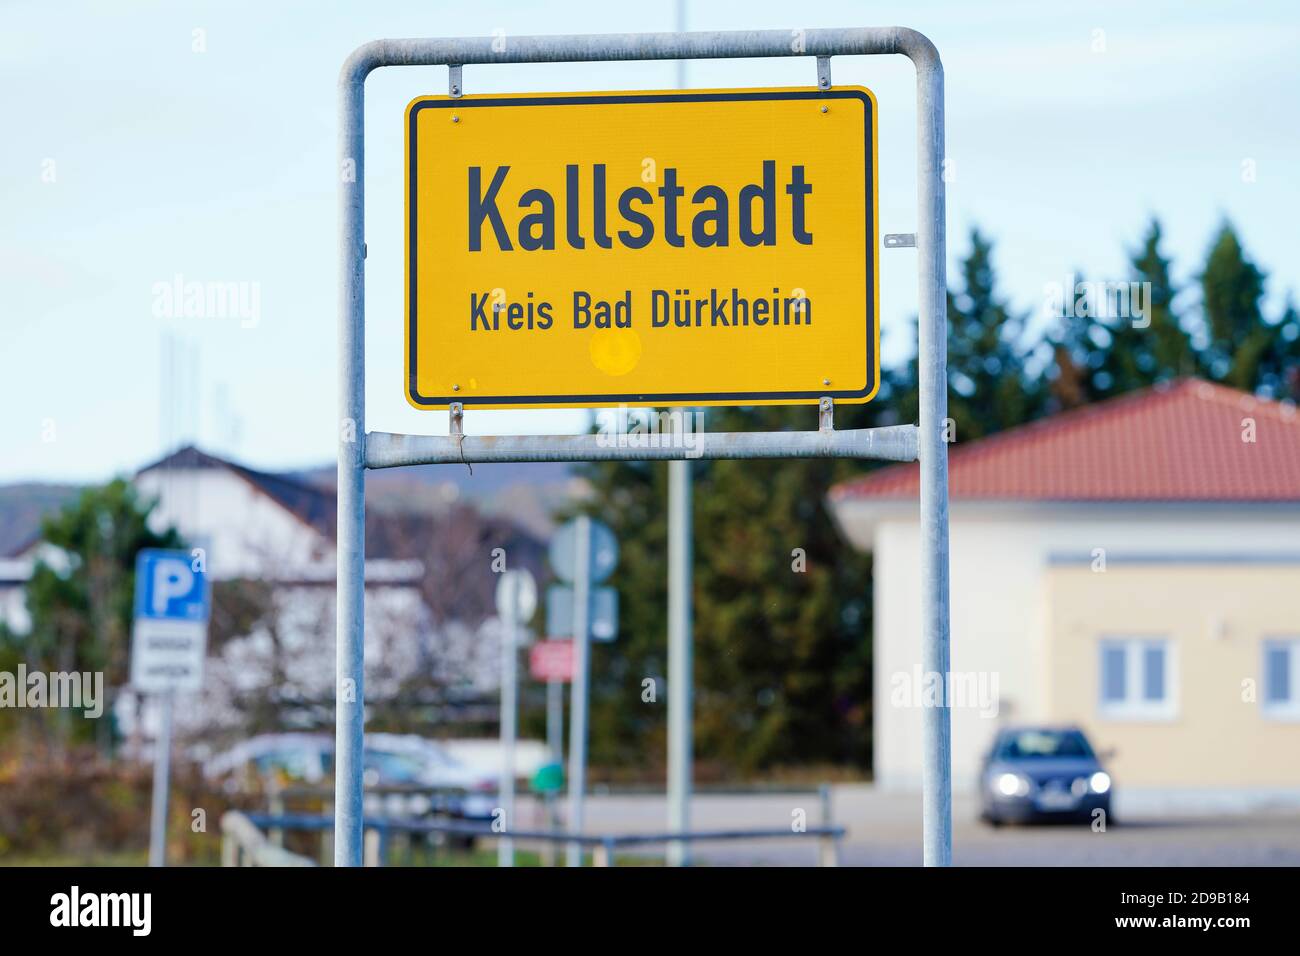 04 novembre 2020, Rhénanie-Palatinat, Kallstadt: Un signe de nom de lieu avec l'inscription 'Kallstadt' est situé à l'entrée d'une ville. Kallstadt était la résidence des ancêtres du côté paternel du président américain Trump. Photo: Uwe Anspach/dpa Banque D'Images